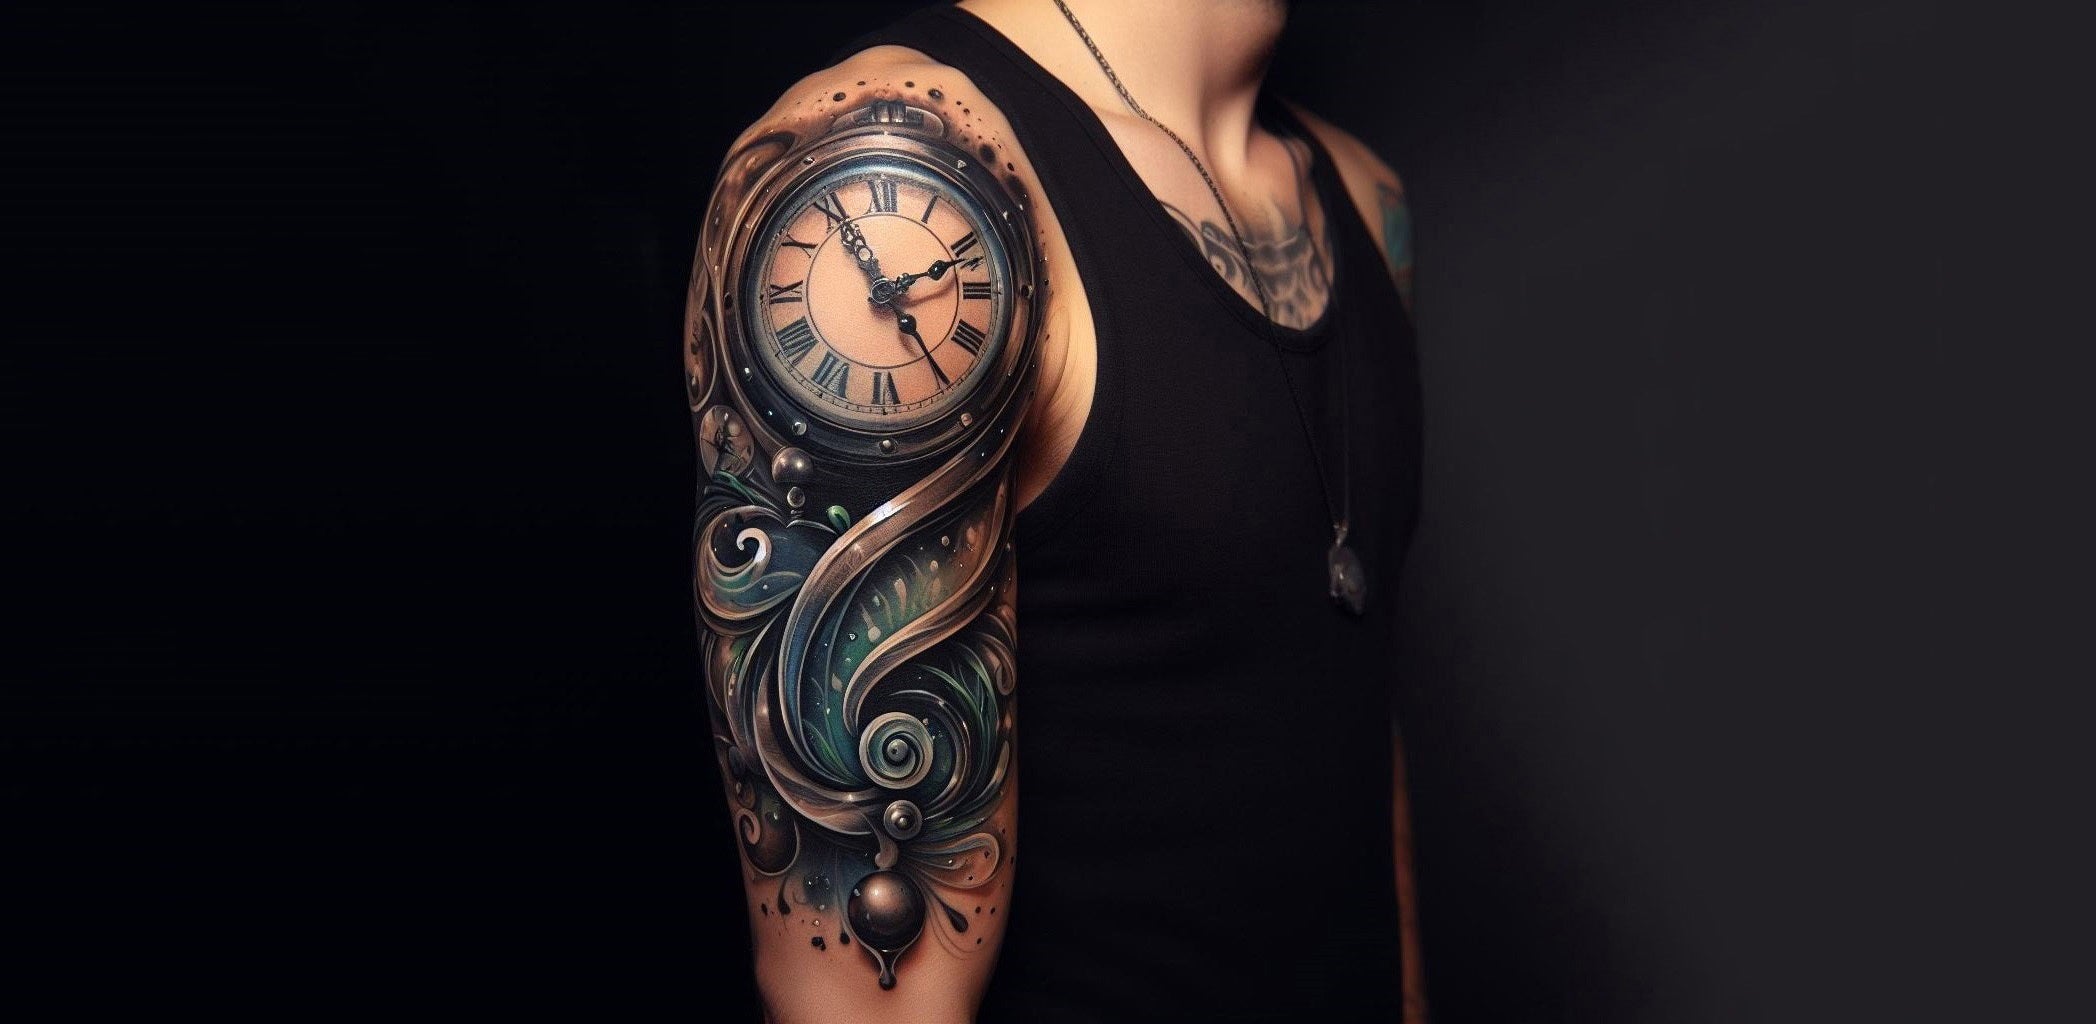 Tattoo-Art & Obsession - SamuraiStandoff ! Art Best pocket watch ever seen  !! | Facebook